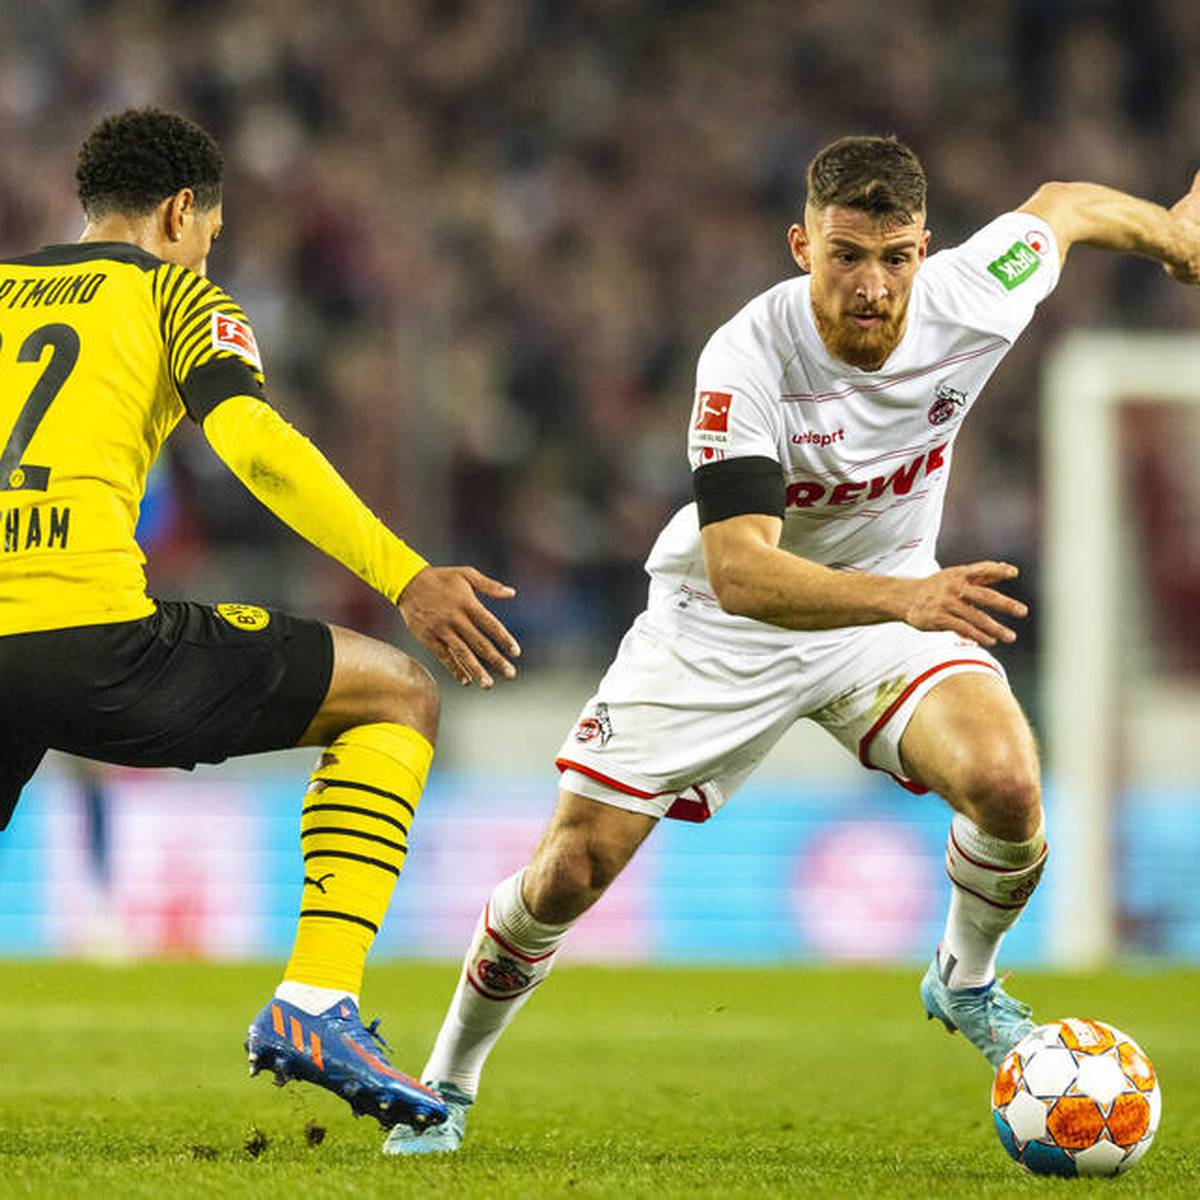 Der BVB verpflichtet Mittelfeldspieler Salih Özcan. Der gebürtige Kölner ist von Borussia Dortmund überzeugt und der Aus von Marco Rose ist für ihn kein großes Thema.